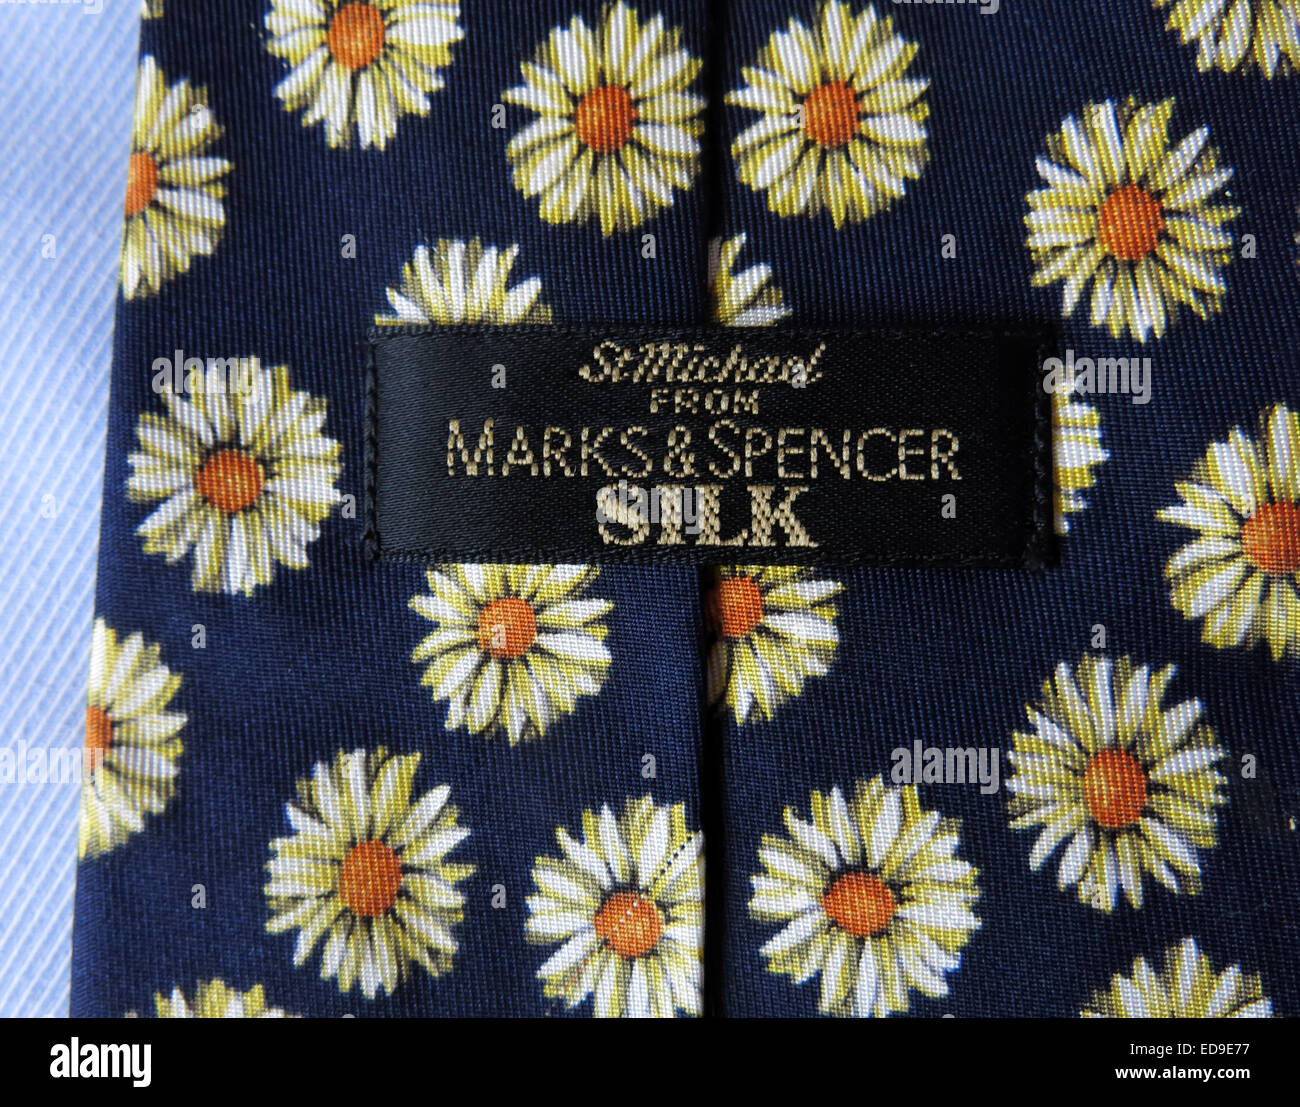 St intéressant Michael M&S Marks & Spencer, homme neckware cravate en soie Banque D'Images